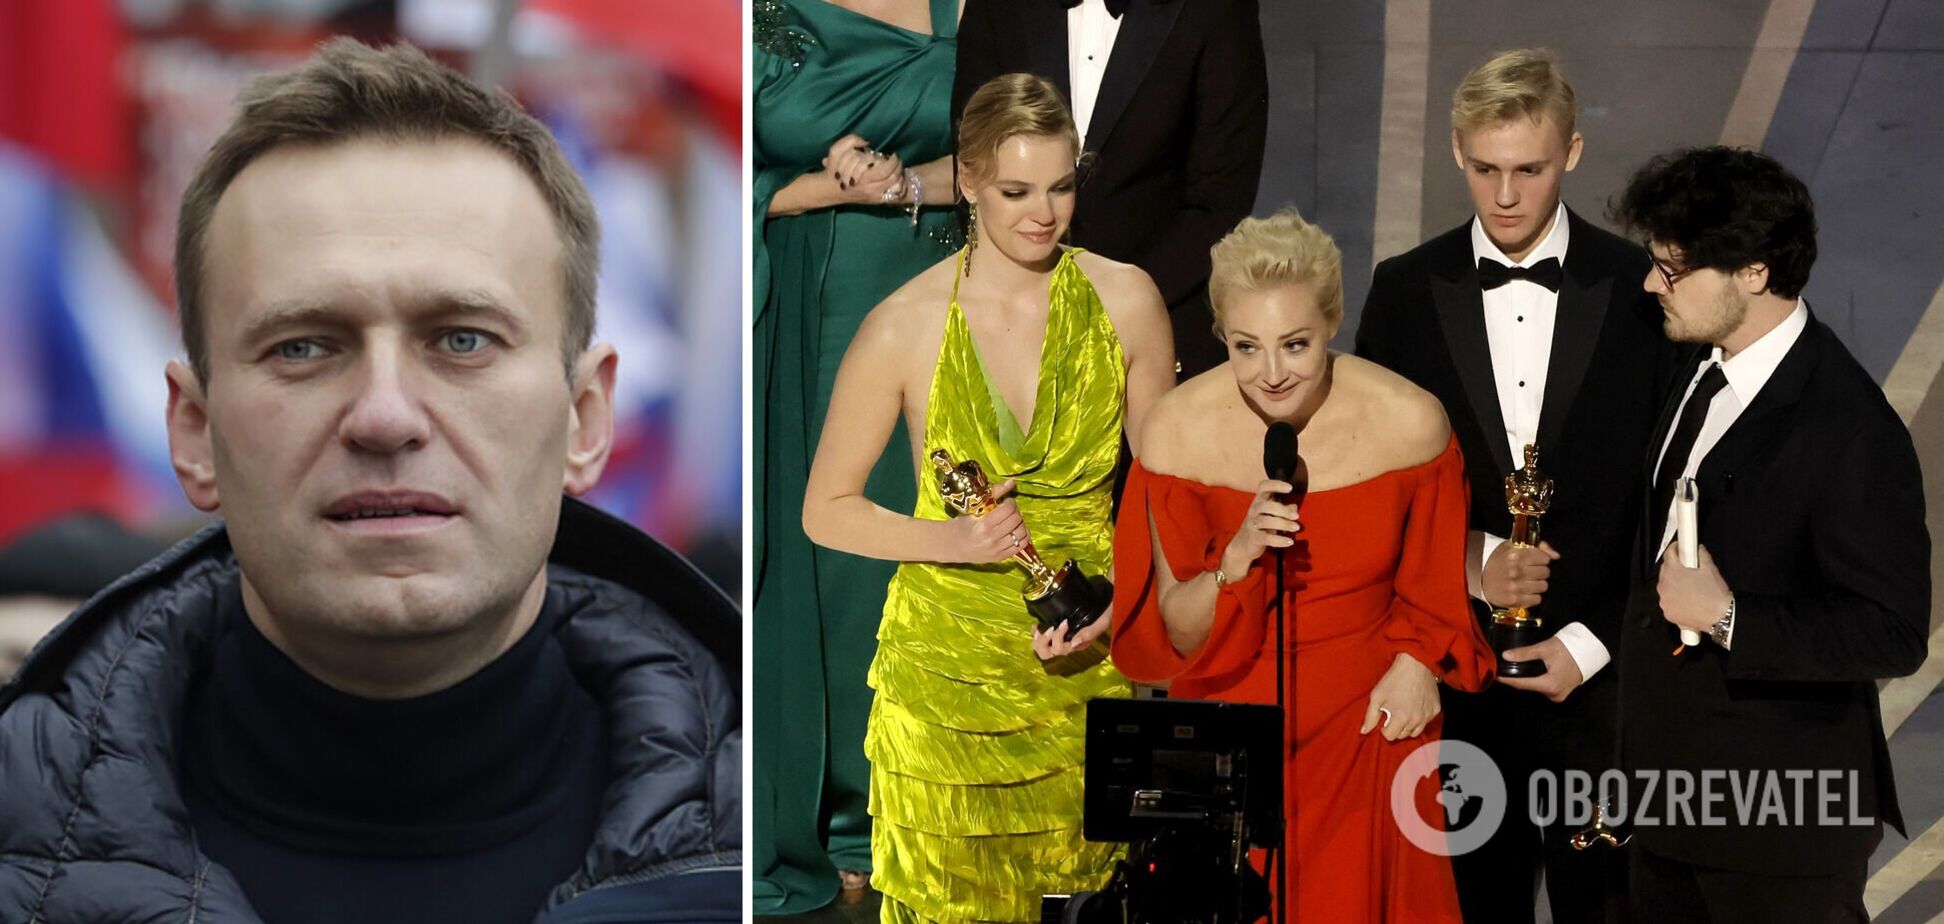 Фильм о Навальном получил 'Оскар': жена россиянина вышла за наградой и заговорила о 'борьбе за демократию'